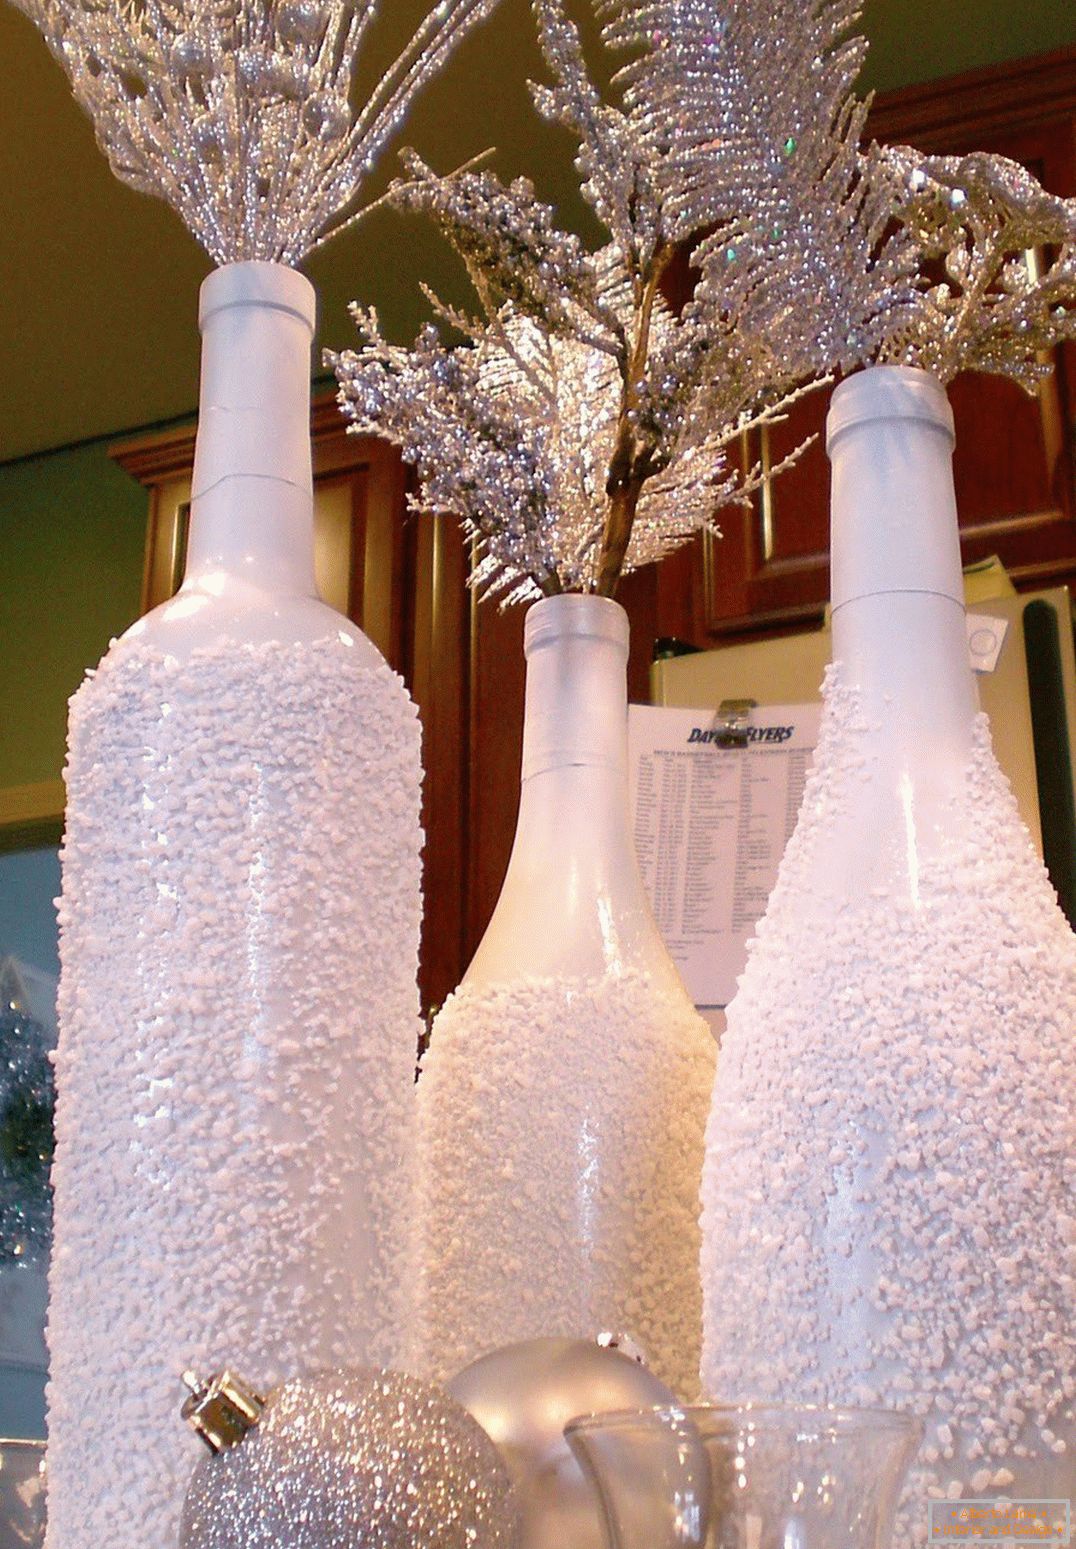 Decorazione natalizia di bottiglie